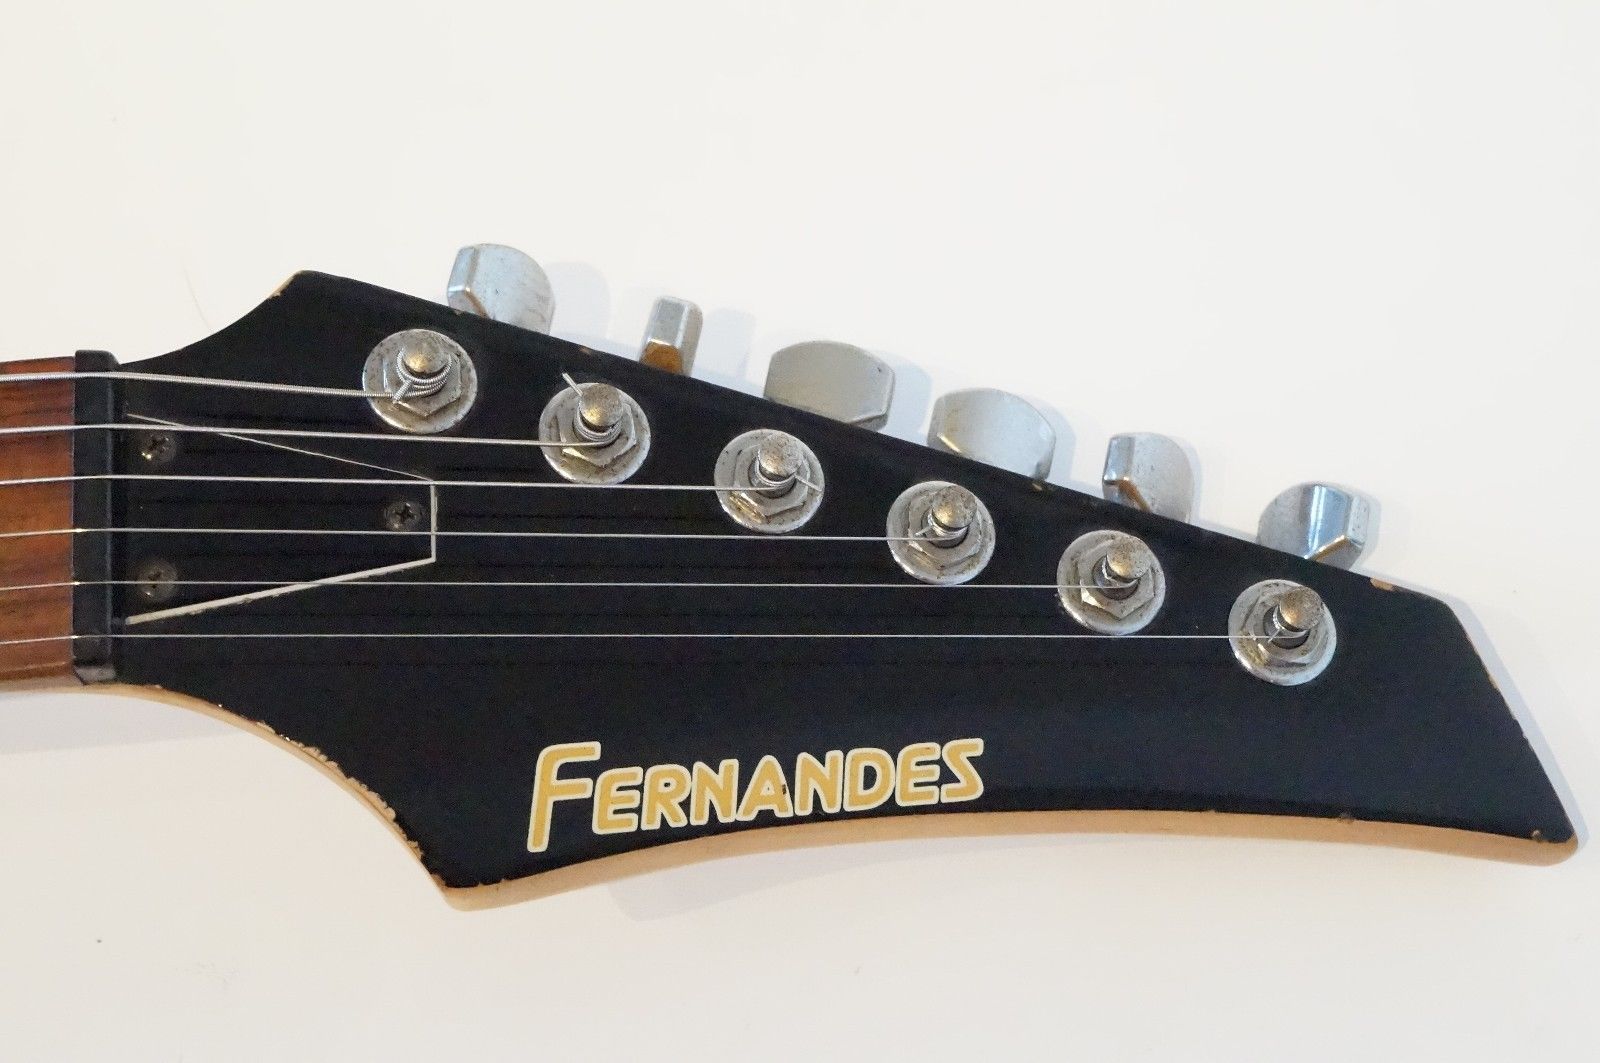 Fernandes guitars serial numbers